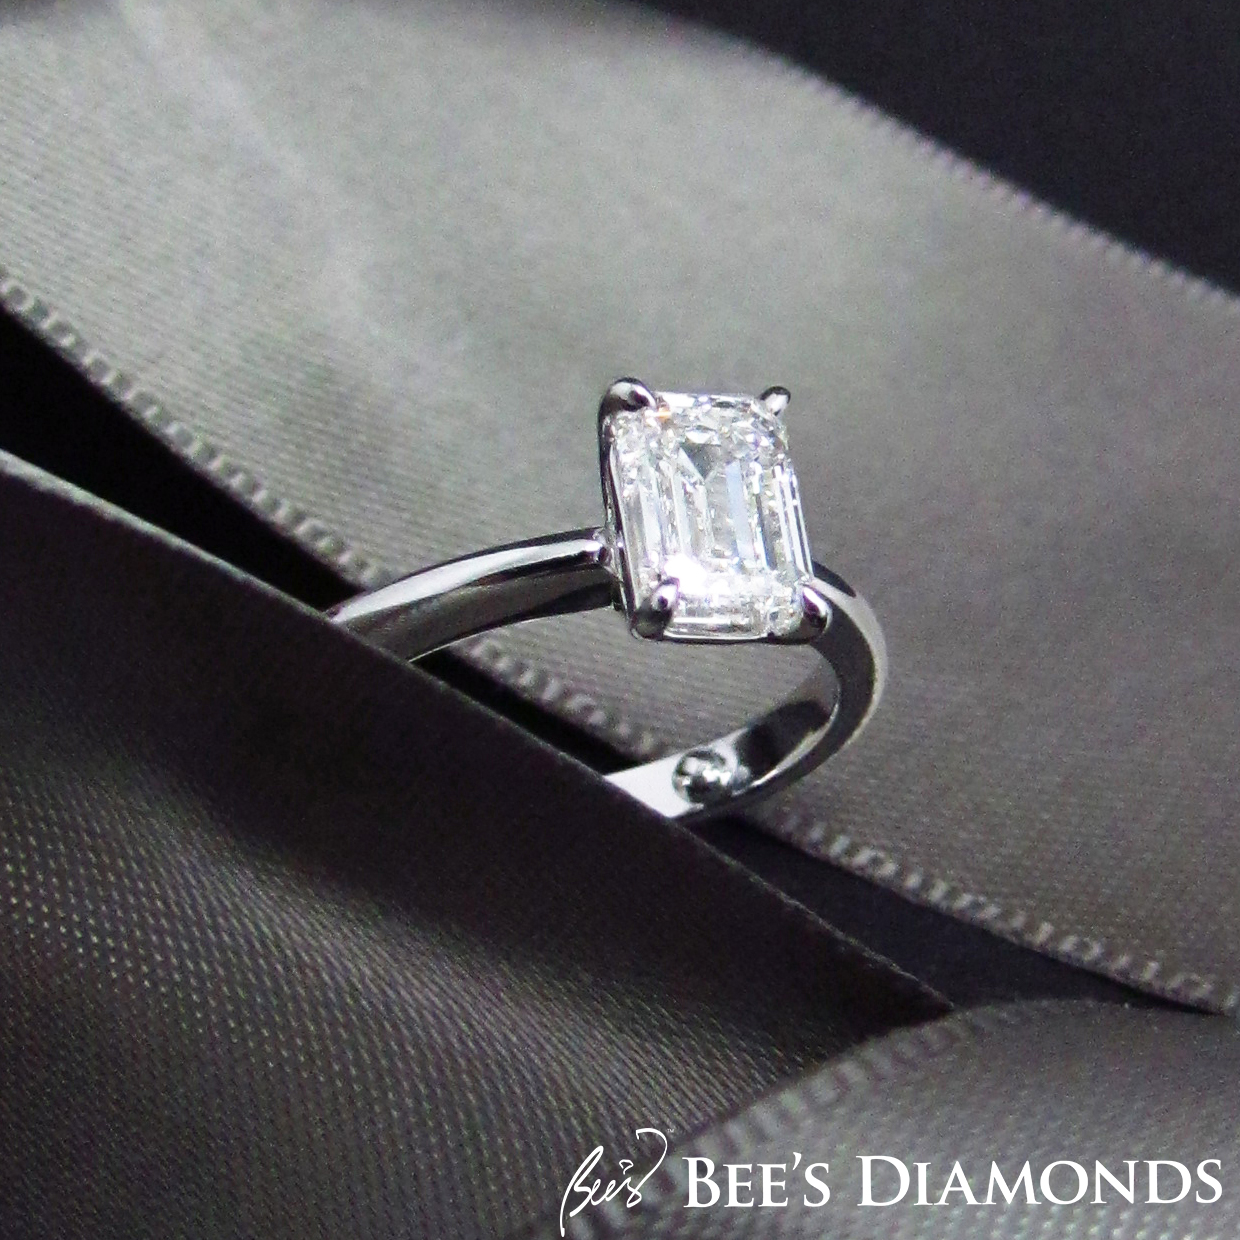 Emerald cut, simple elegant solitaire diamond engagement ring